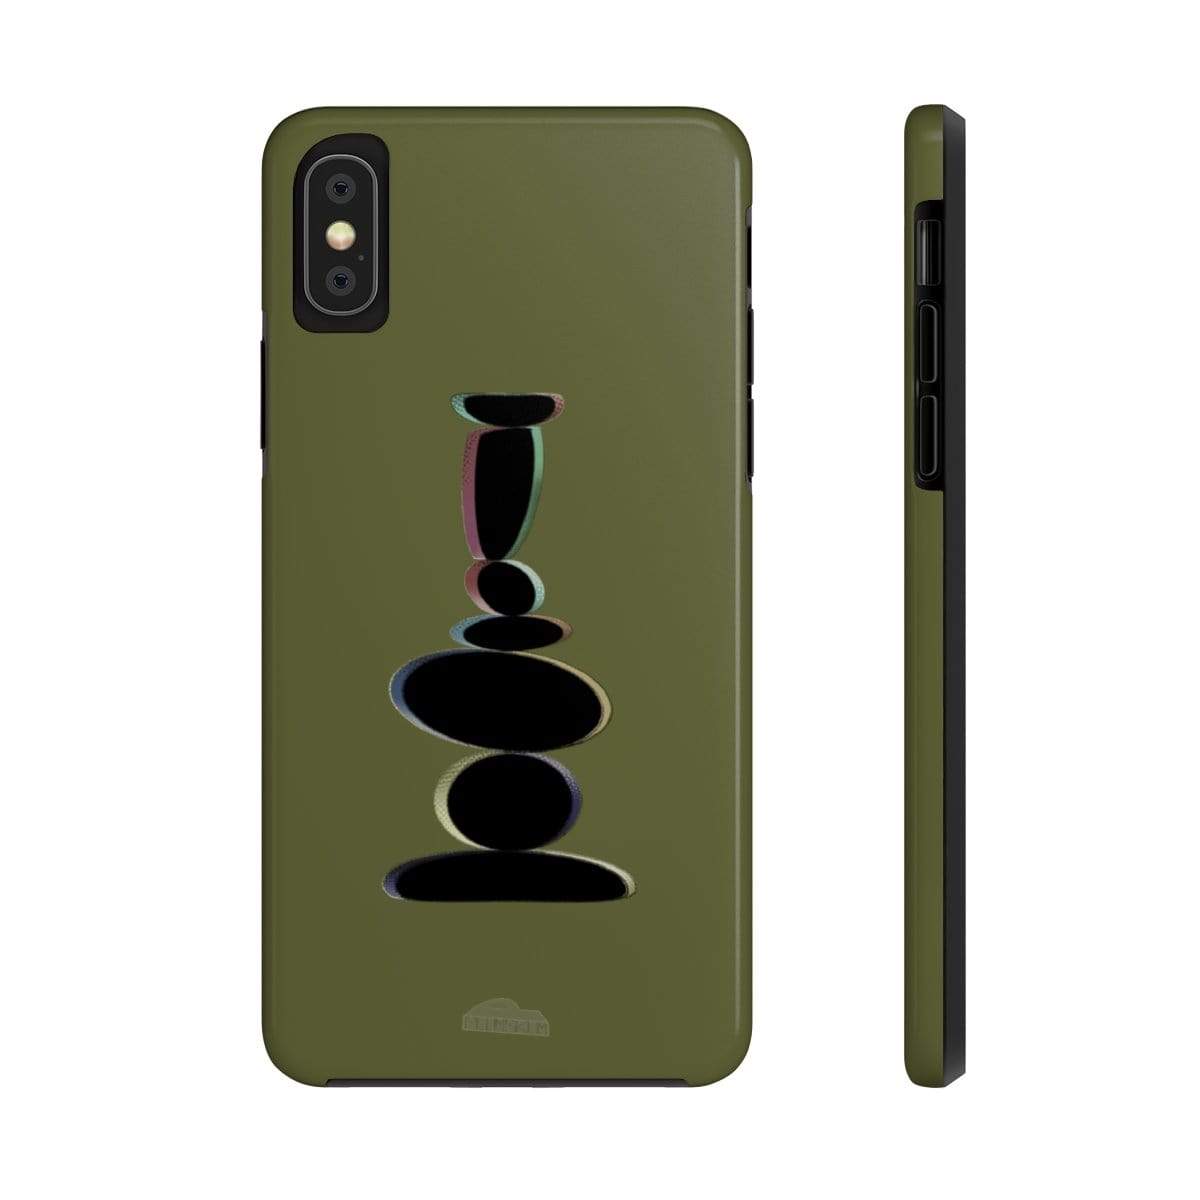 Plumskum Phone Case iPhone XS Plumskum Zen Balanced Stones Artwork Phone Case